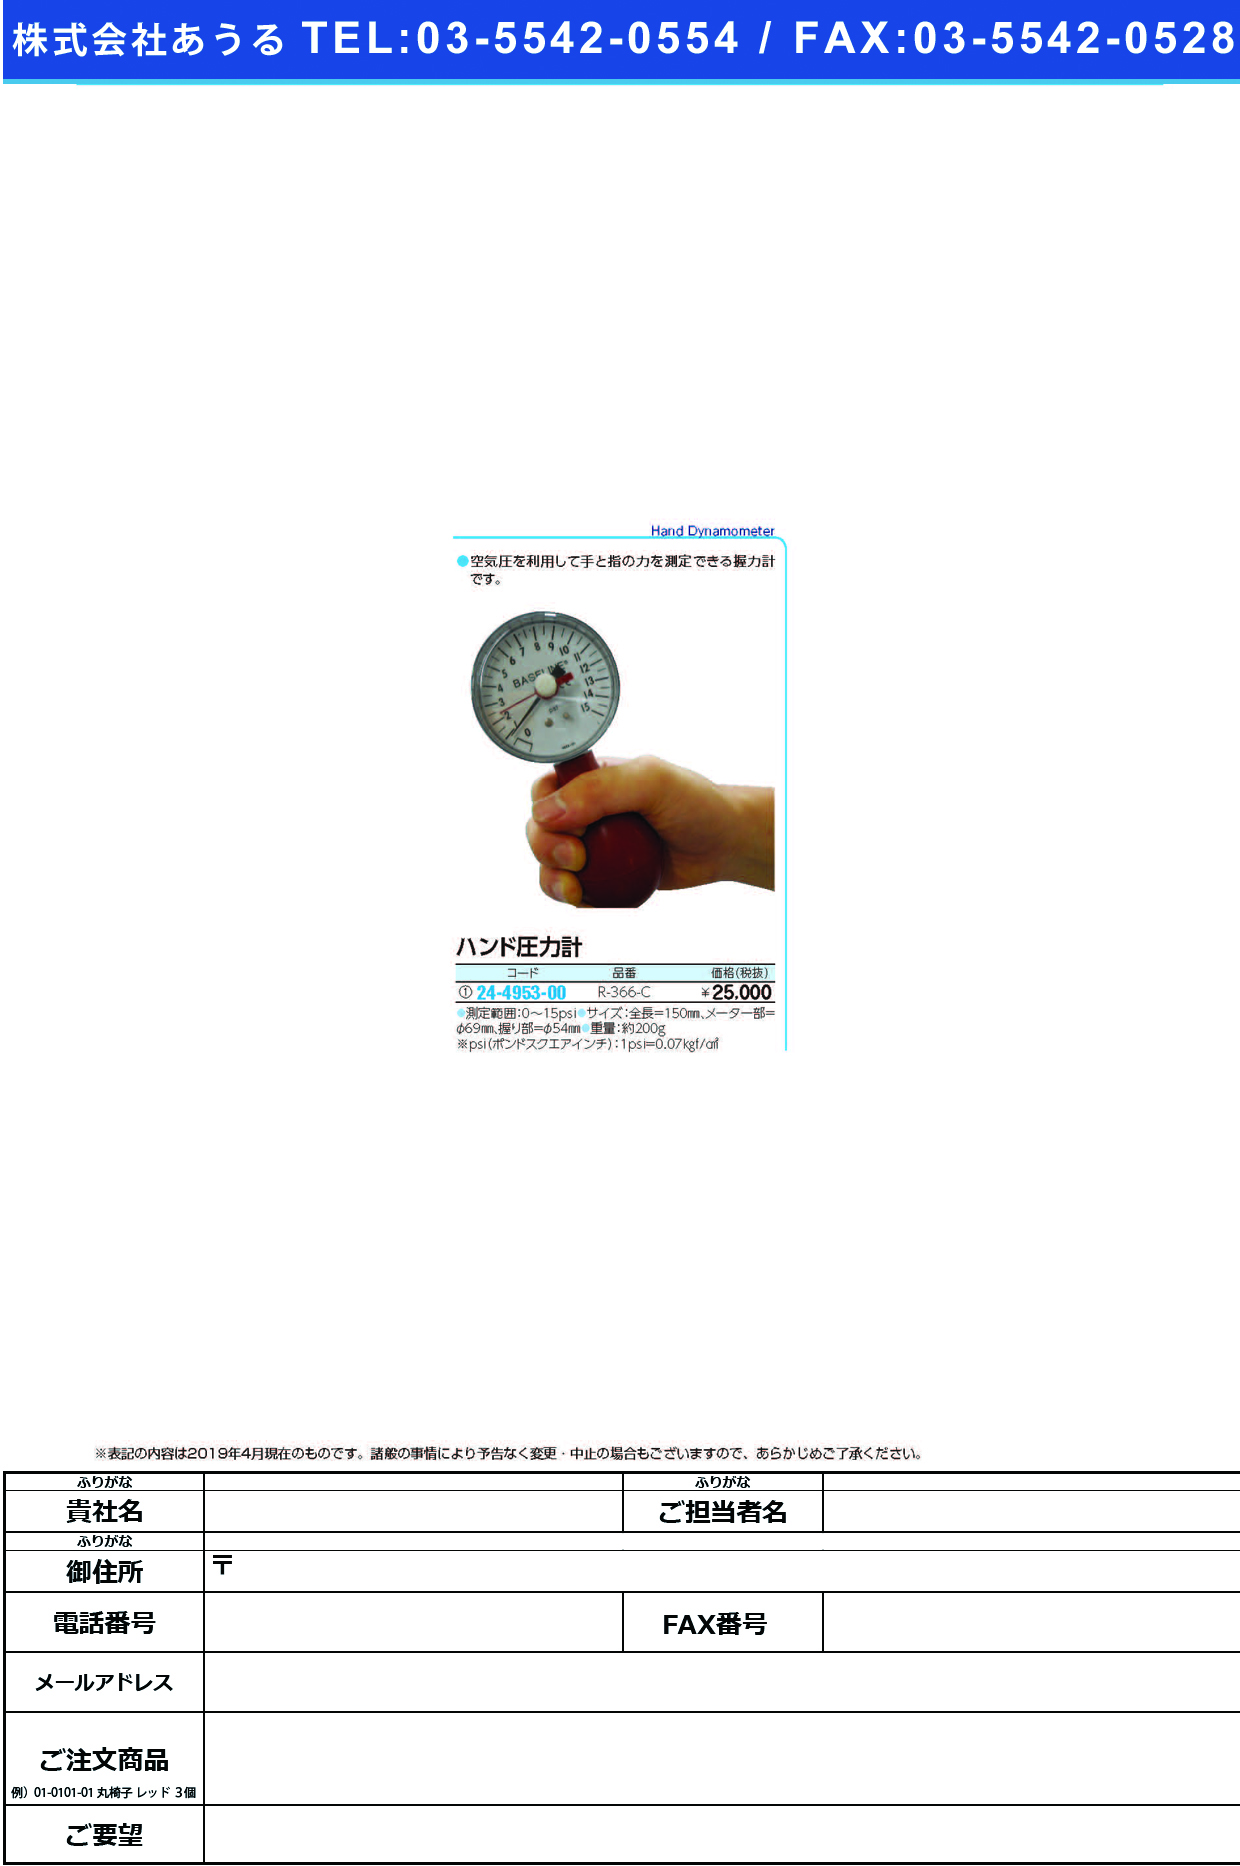 (24-4953-00)ハンド圧力計（握力計） R-366-C ﾊﾝﾄﾞｱﾂﾘｮｸｹｲ【1台単位】【2019年カタログ商品】